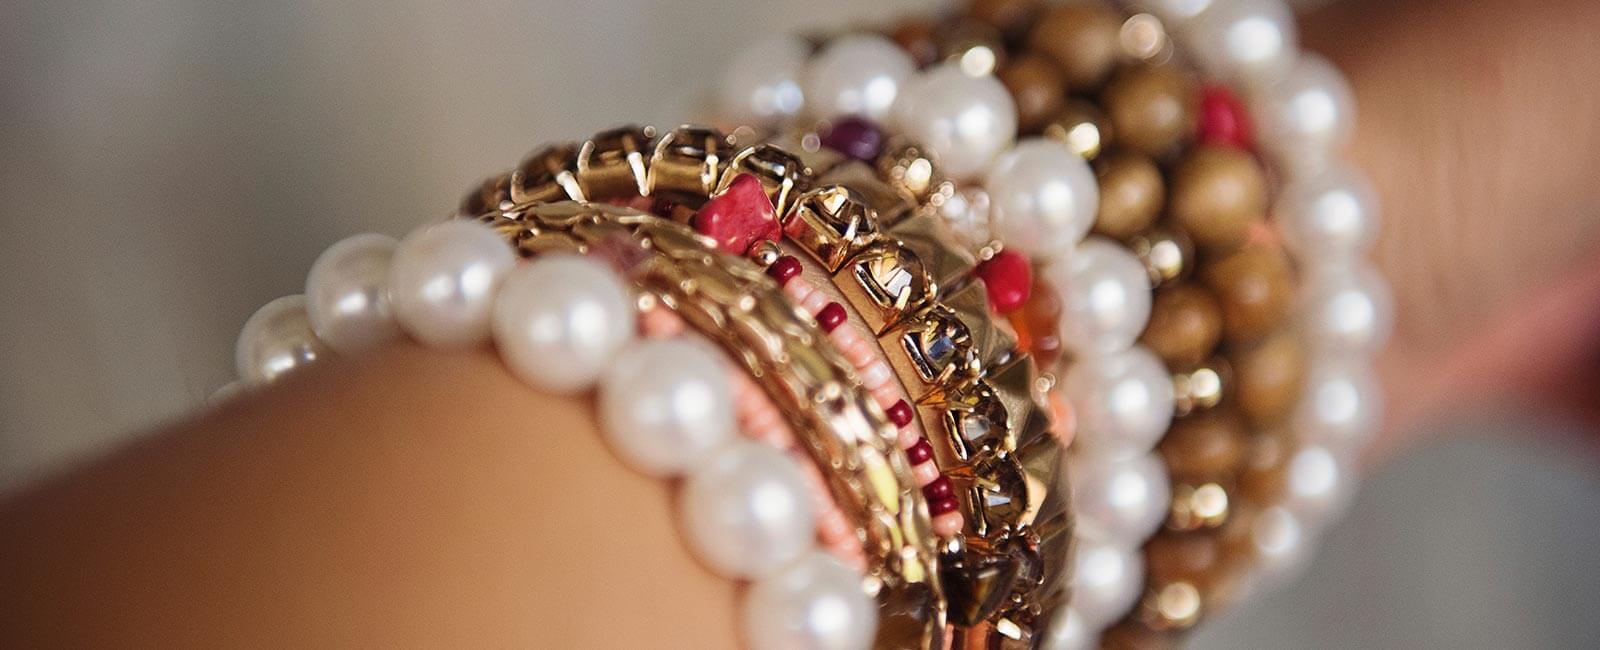 Comment choisir son bracelet perle ?